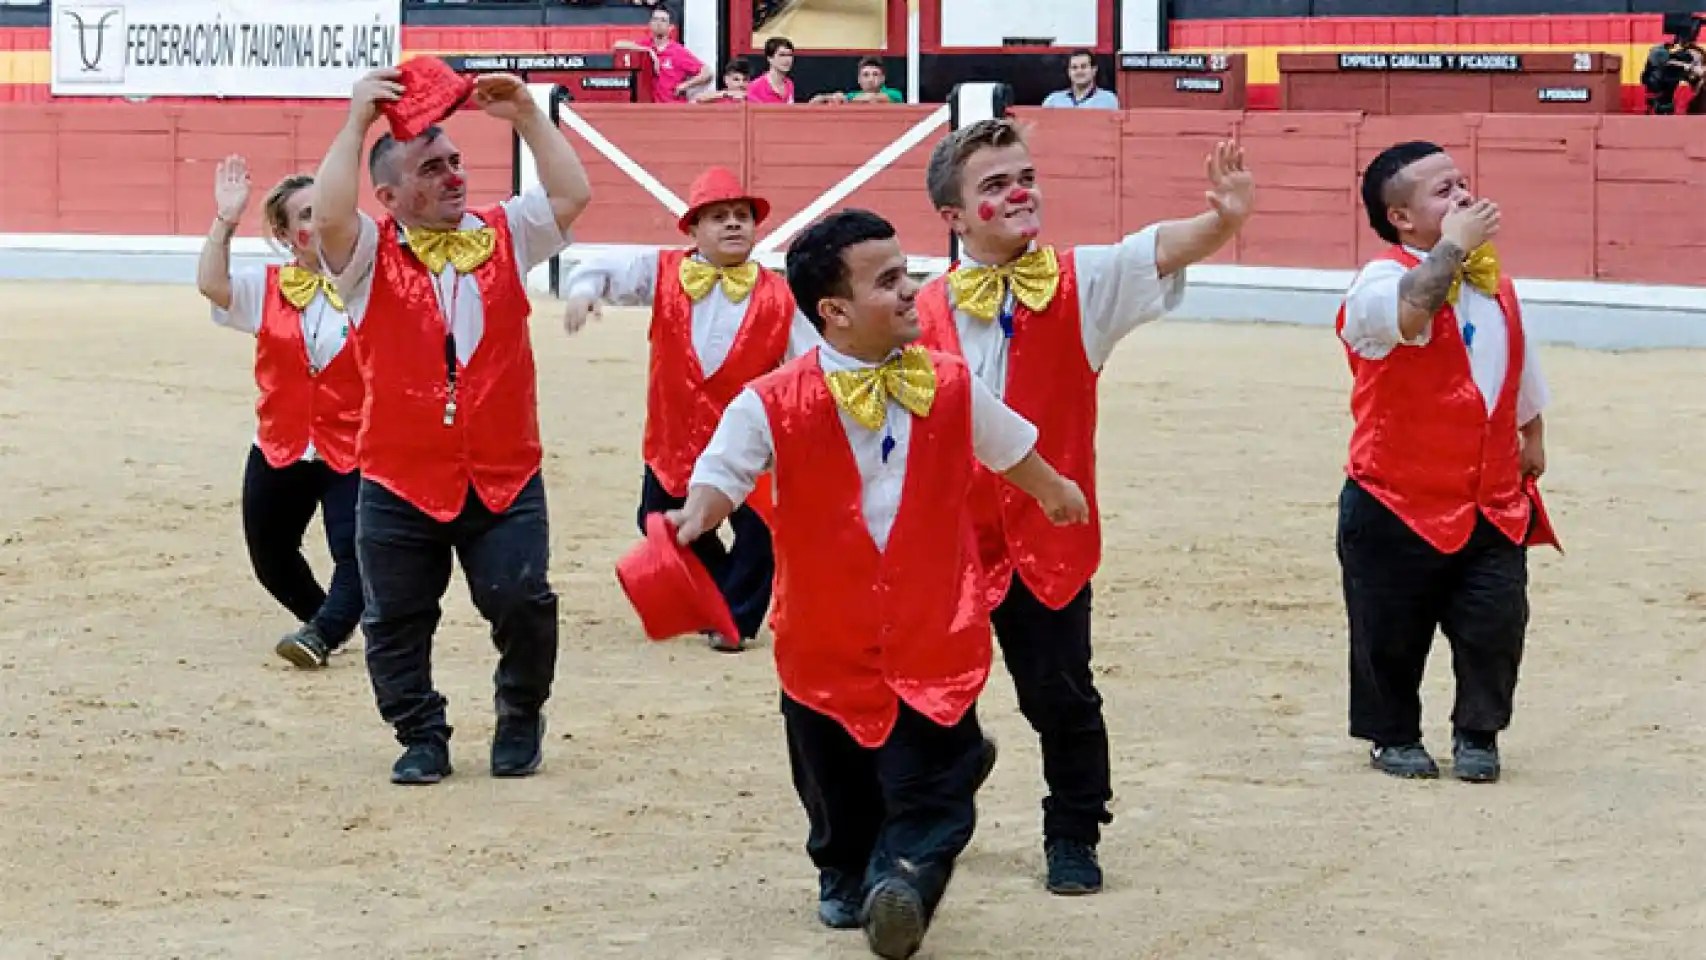 España prohíbe espectáculos considerados denigrantes como los enanos toreros